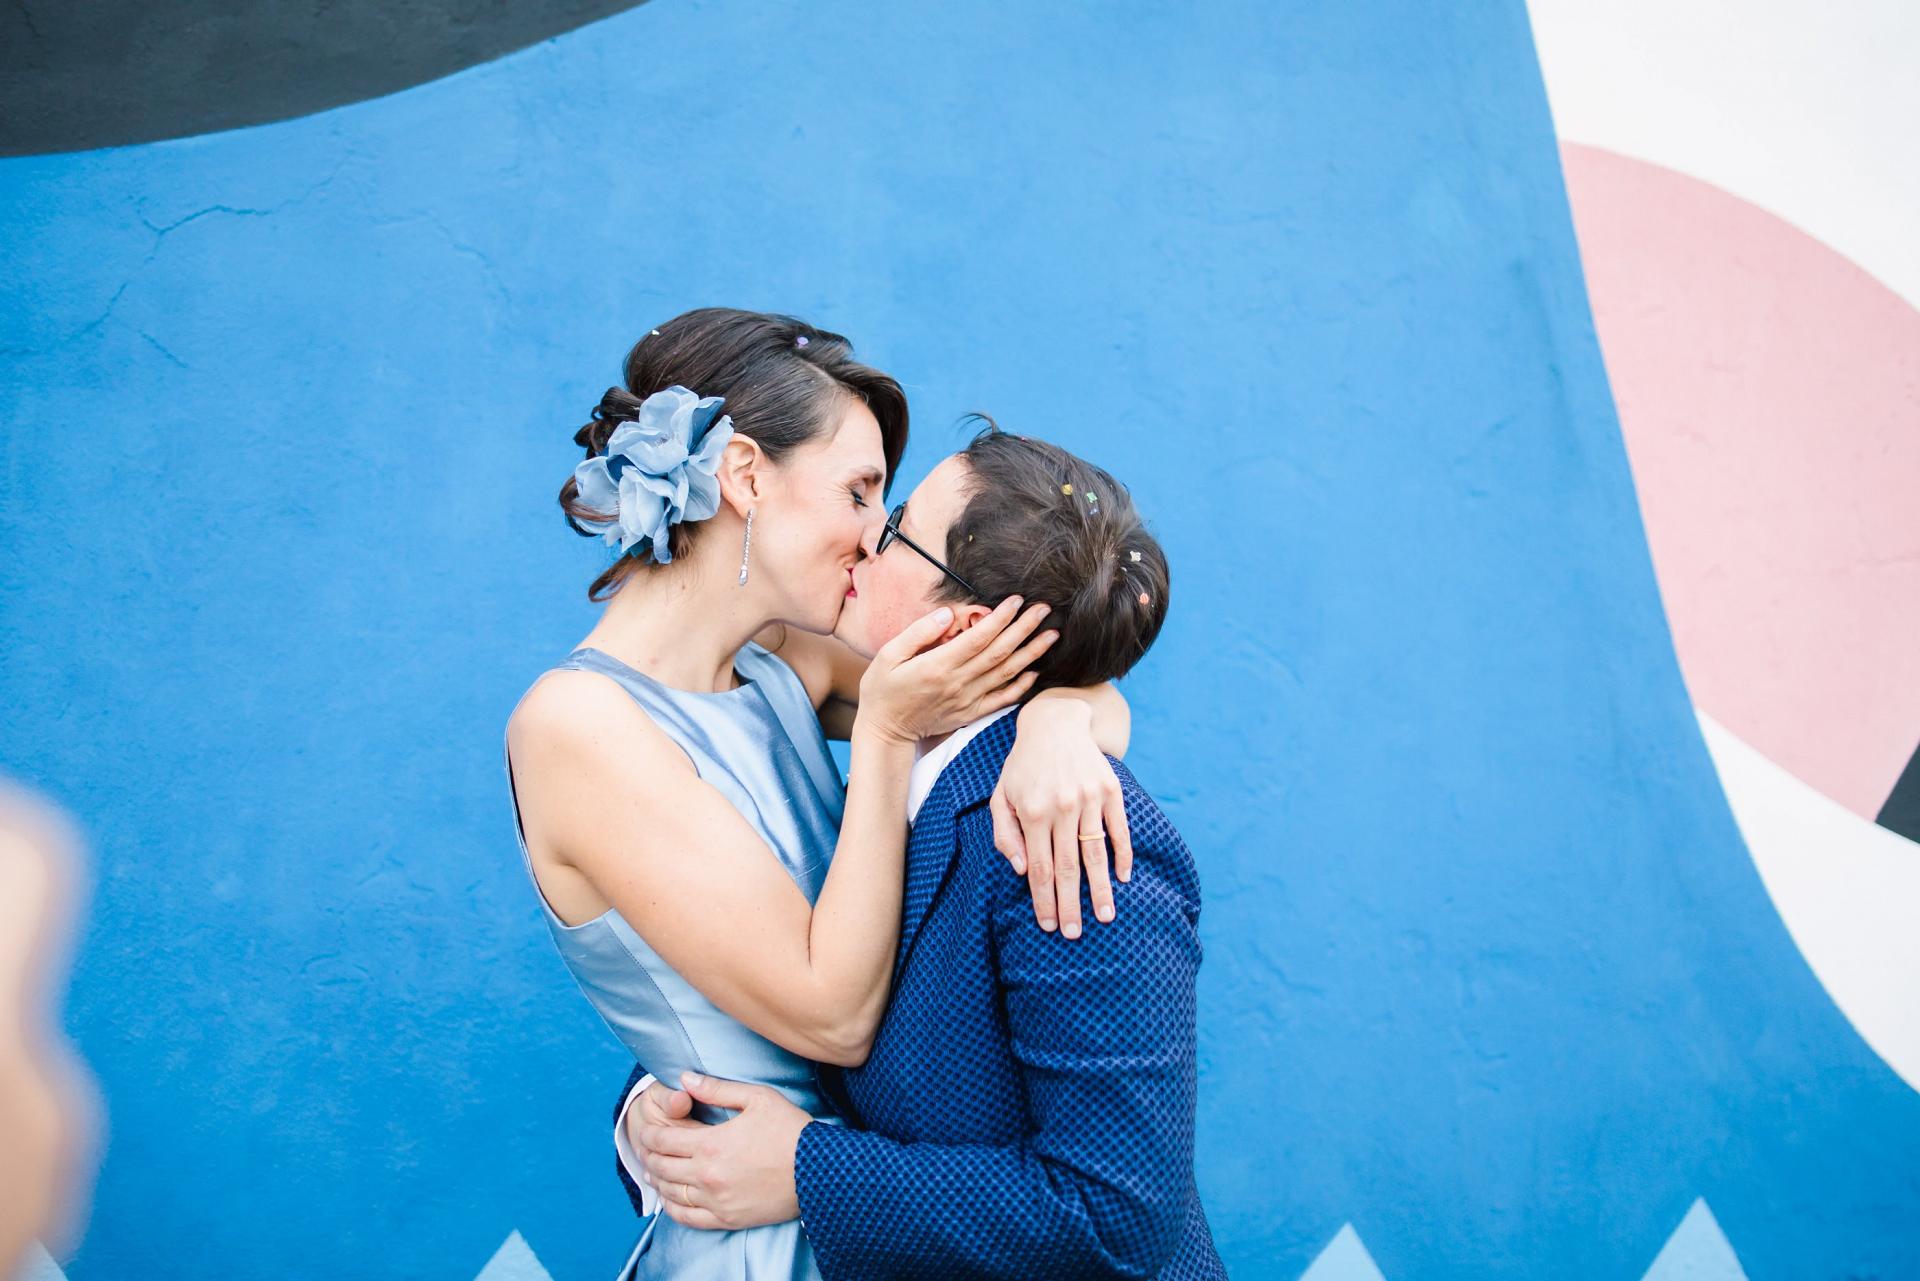 Paola&Sara Matrimonio Wedding Same Sex Italia Italy MCE Stories Destination Photographer